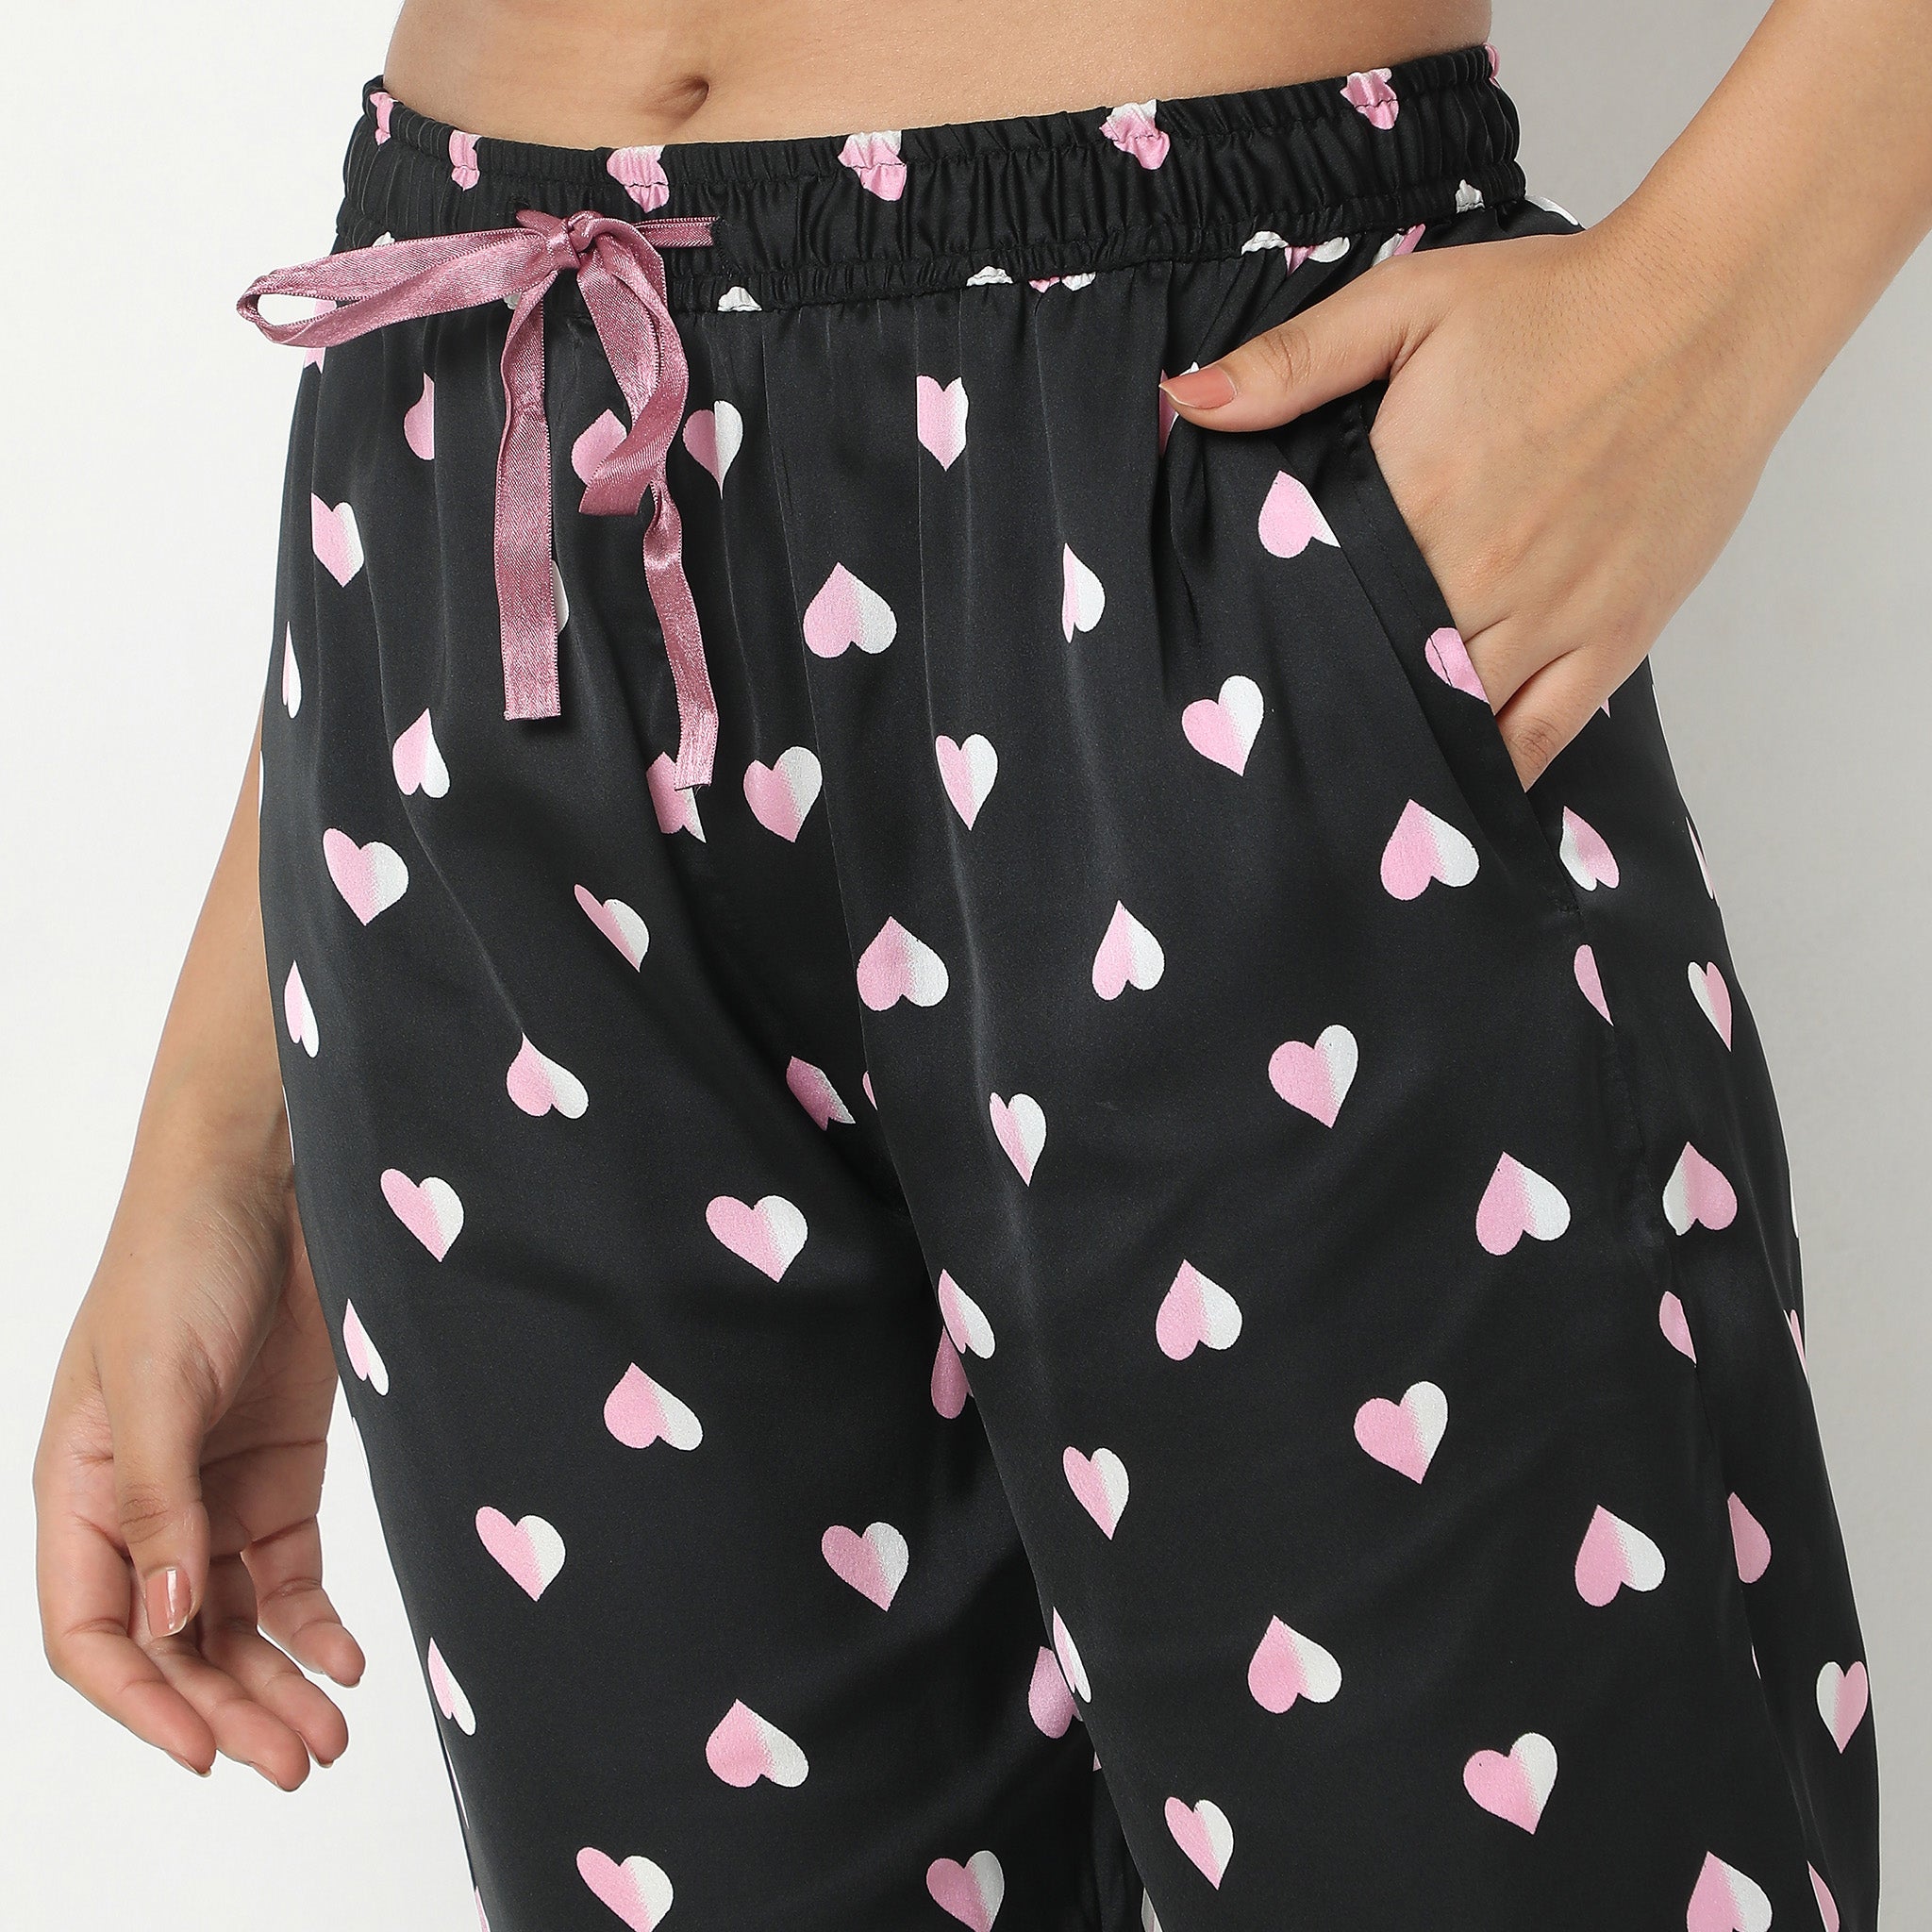 Regular Fit Printed Top with Pyjama Sleepwear Set